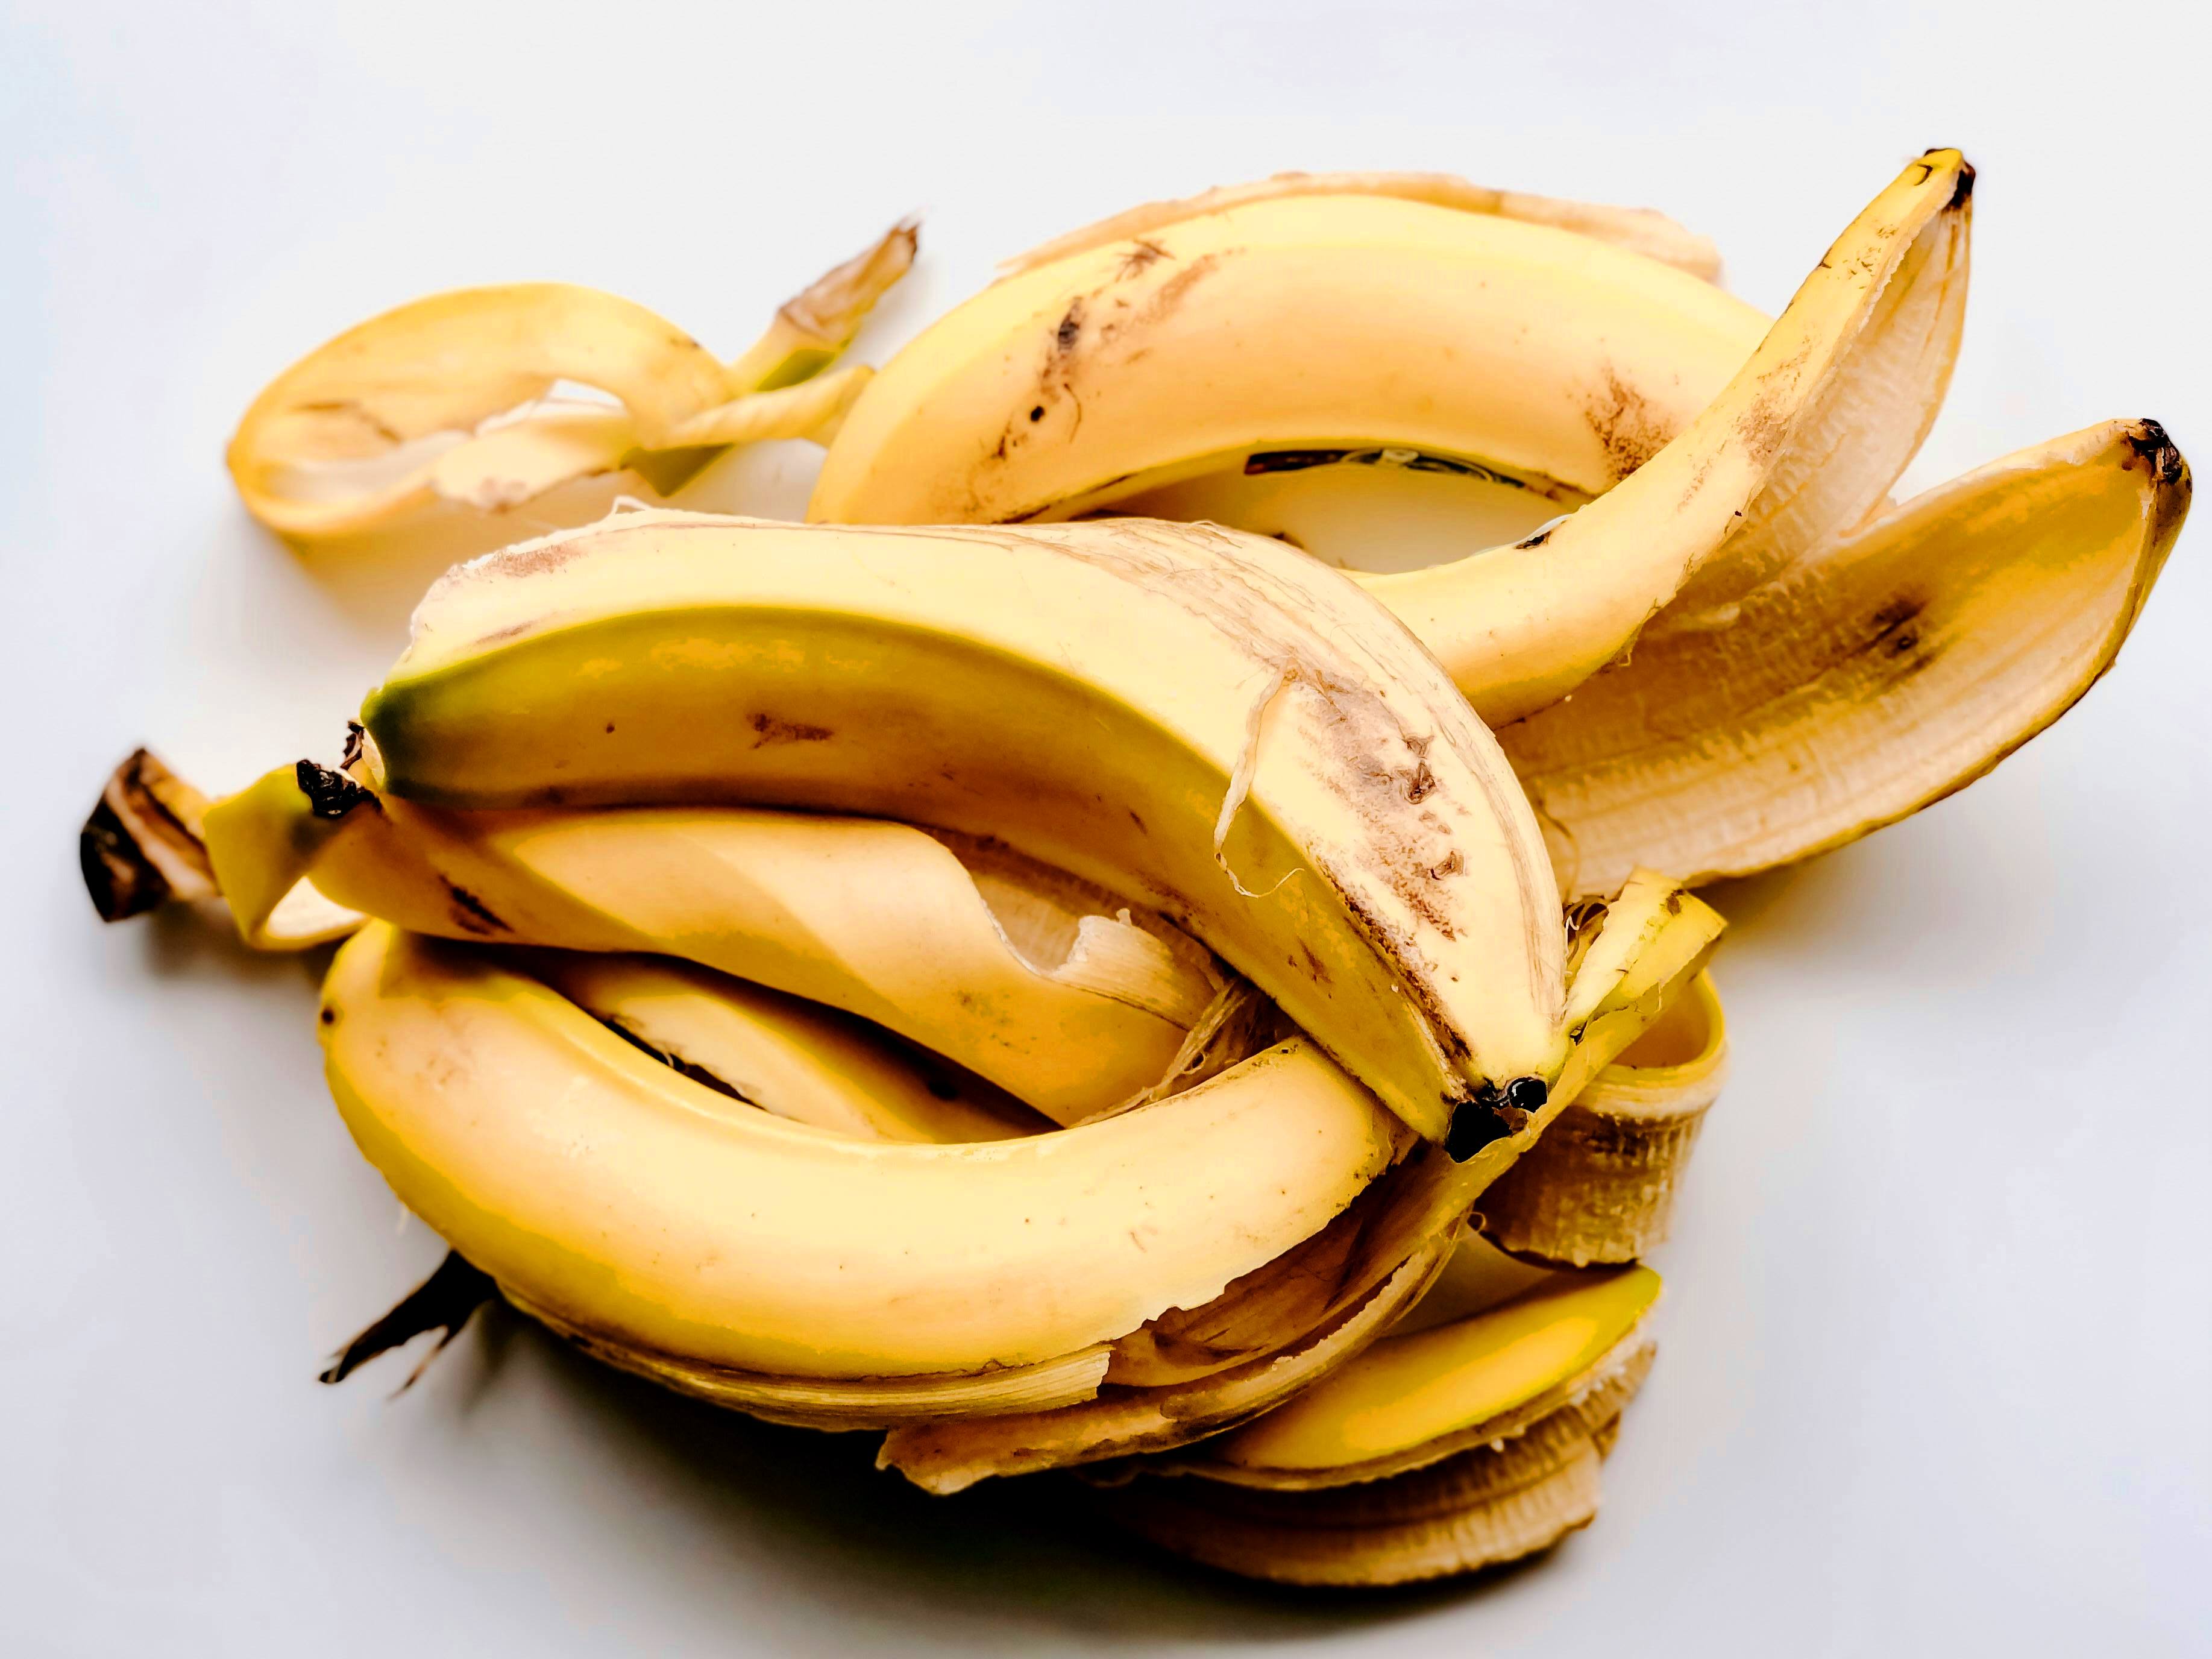 Пять веских причин не выбрасывать банановую кожуру: полезна в быту и уходе за кожей